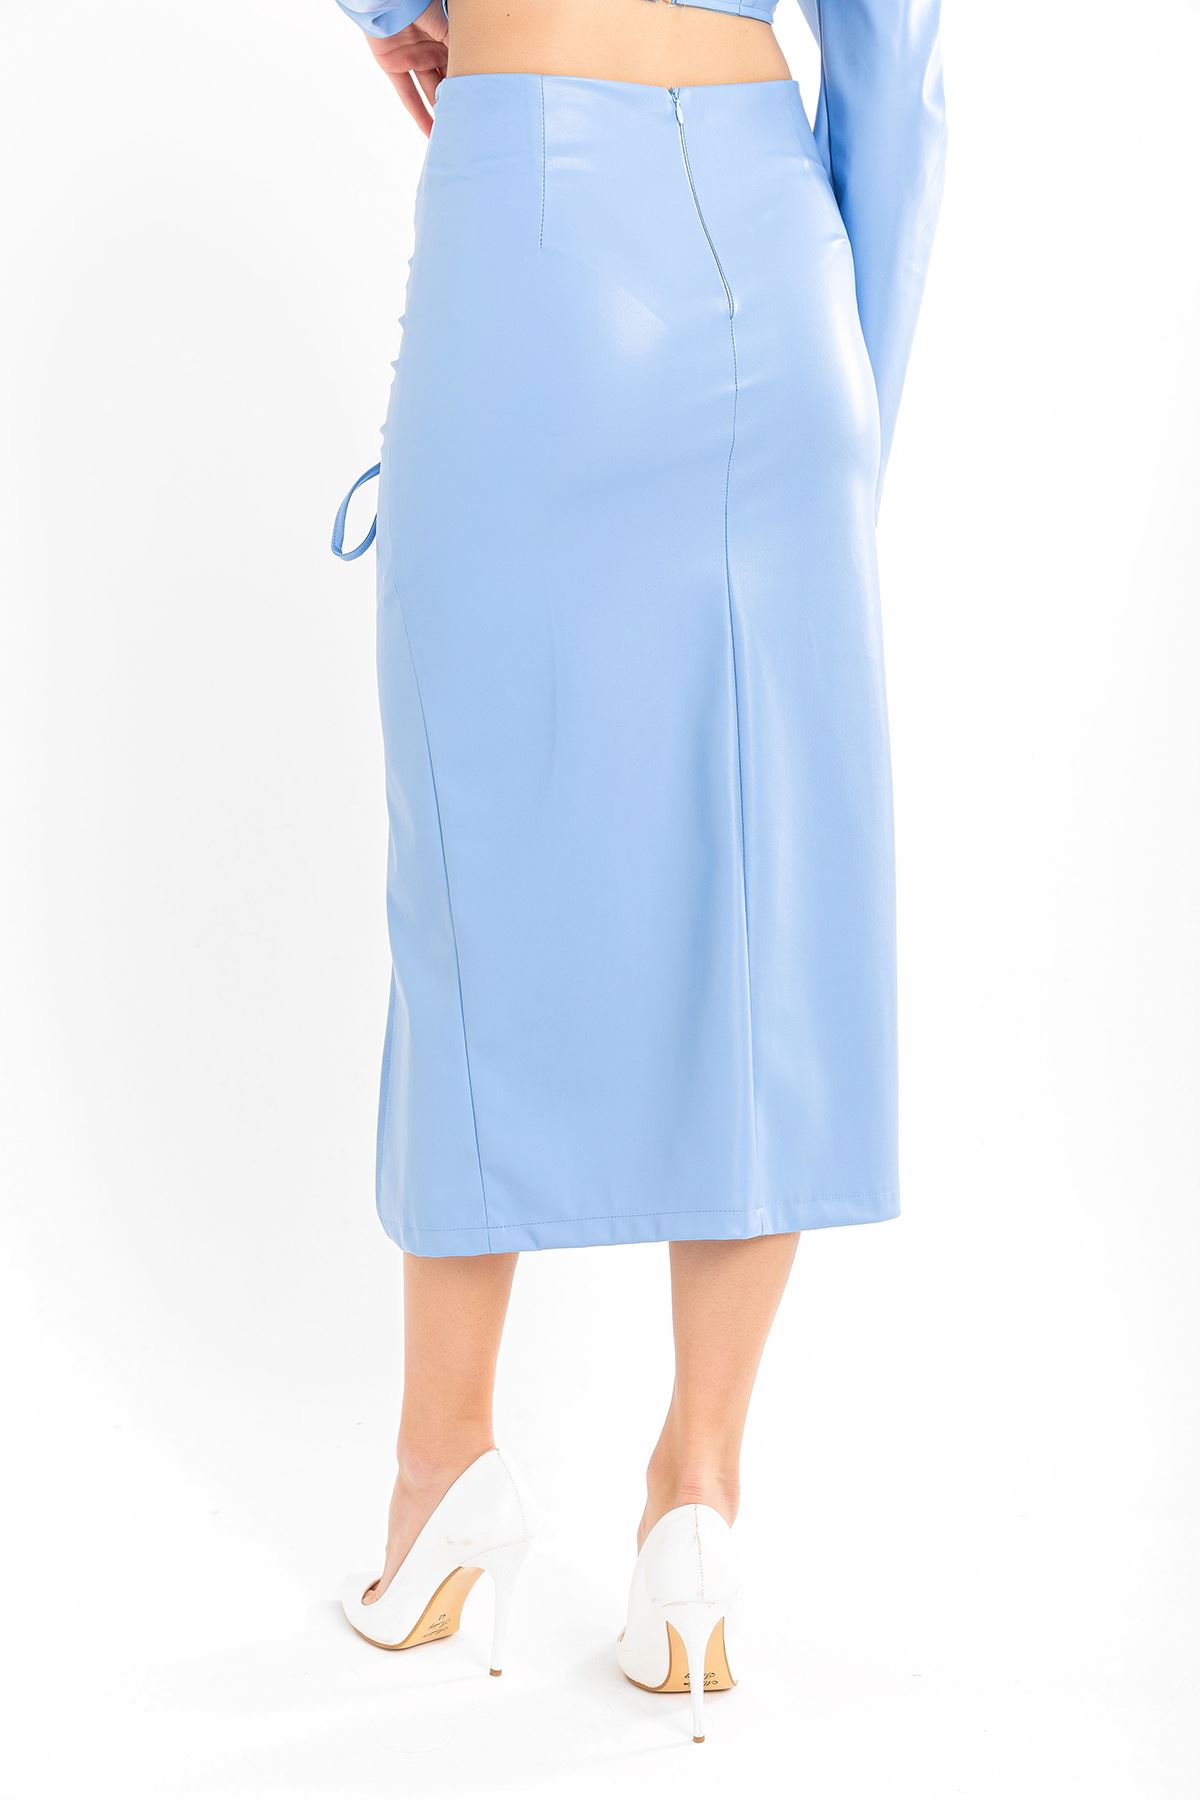 تنورة نسائية قماش جلد تحت الركبتين - ازرق